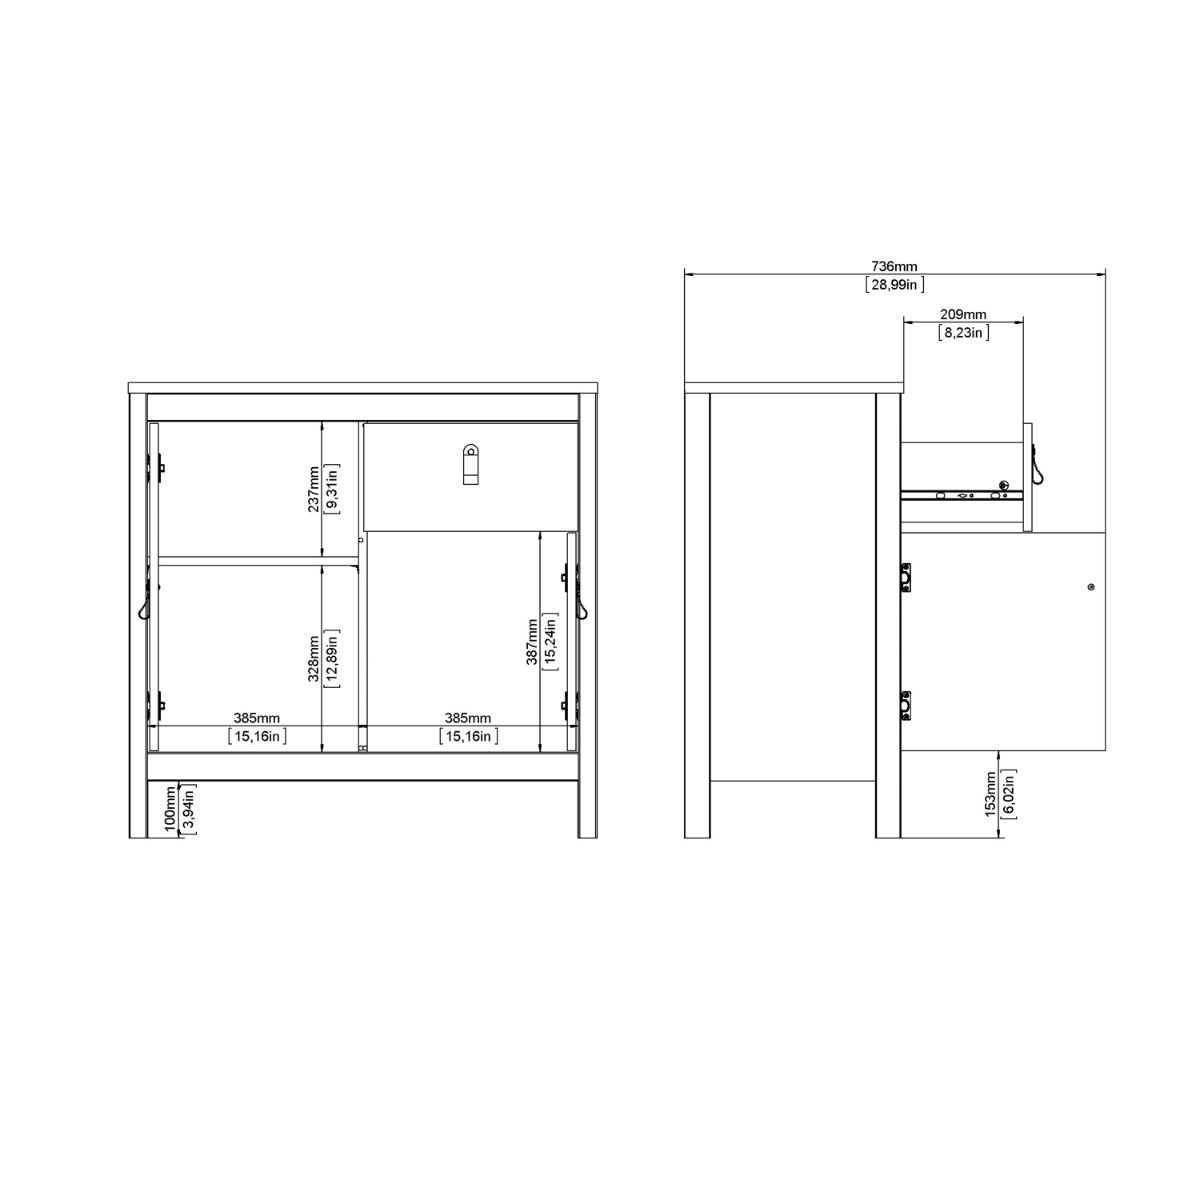 Barcelona Sideboard 2 Doors 1 Drawer in Matt Black & White